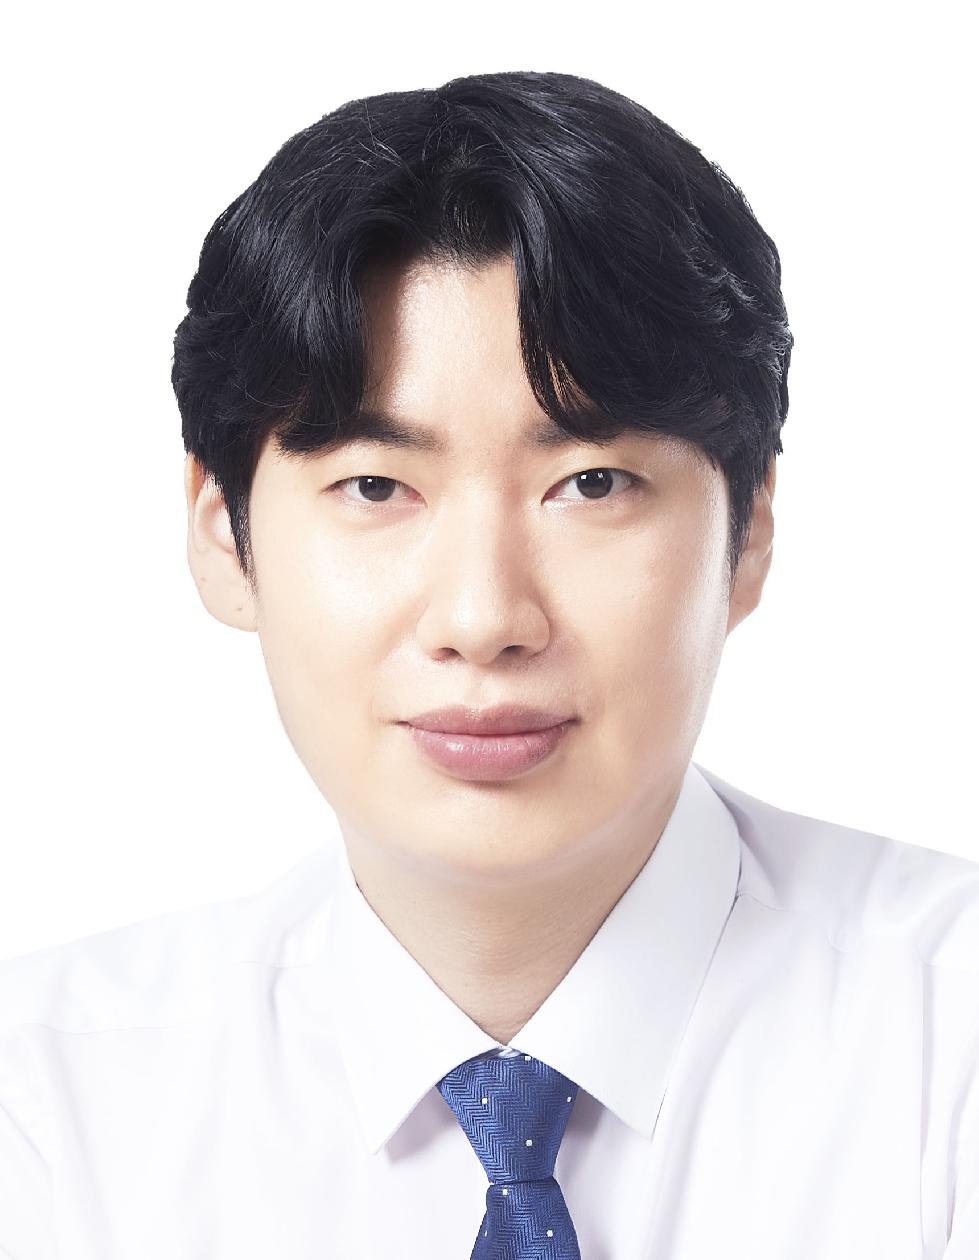 용인시의회 이상욱 의원 대표발의  ‘용인시 청년 건강증진 지원 조례안’ 